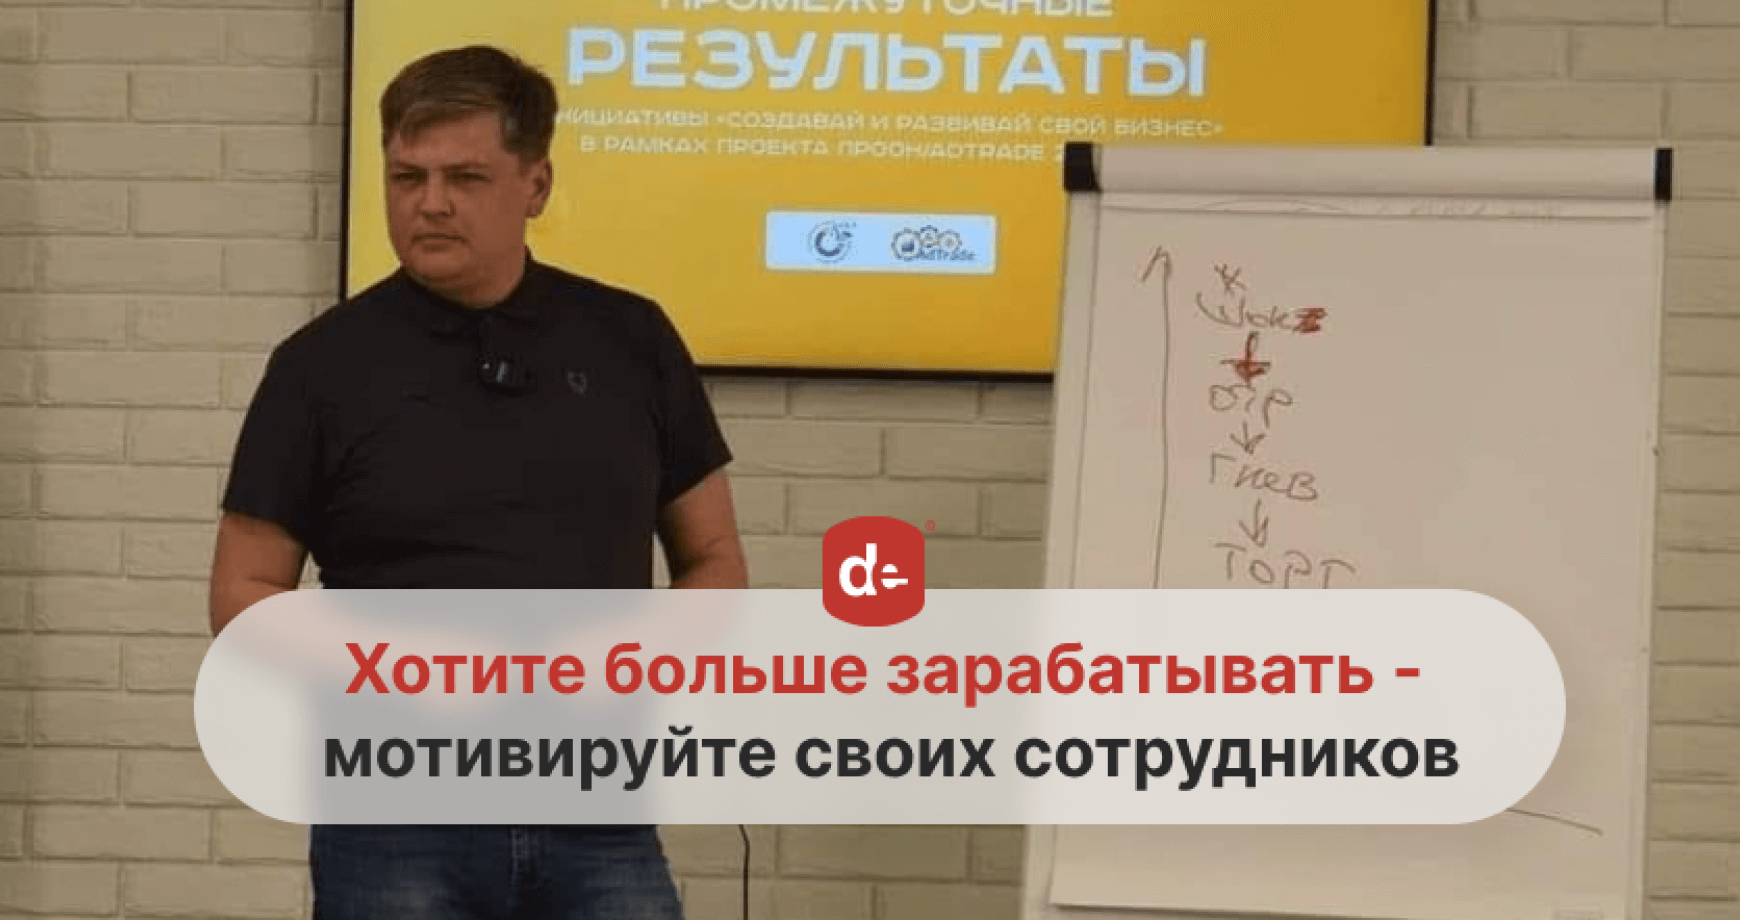 Артем Полушатов: “Первое, на что нужно обращать внимание в бизнесе –  это ЧЕЛОВЕК”